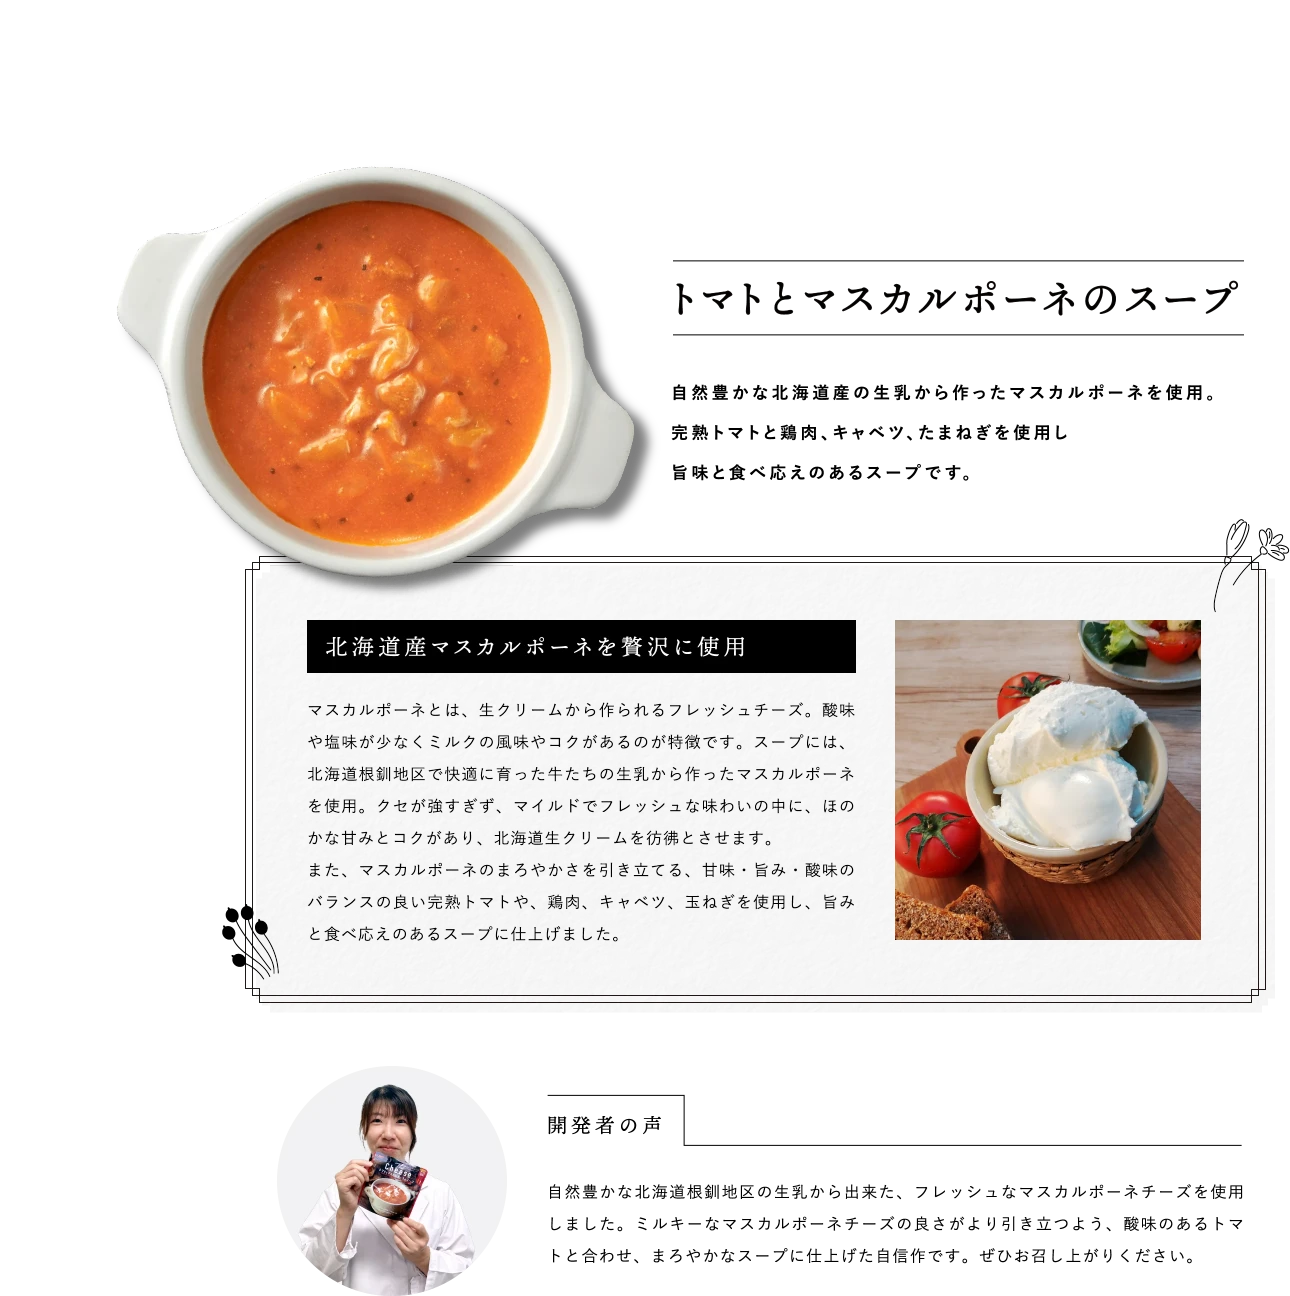 トマトとマスカルポーネのスープ　自然豊かな北海道産の生乳から作ったマスカルポーネを使用。完熟トマトと鶏肉、キャベツ、たまねぎを使用し旨味と食べ応えのあるスープです。